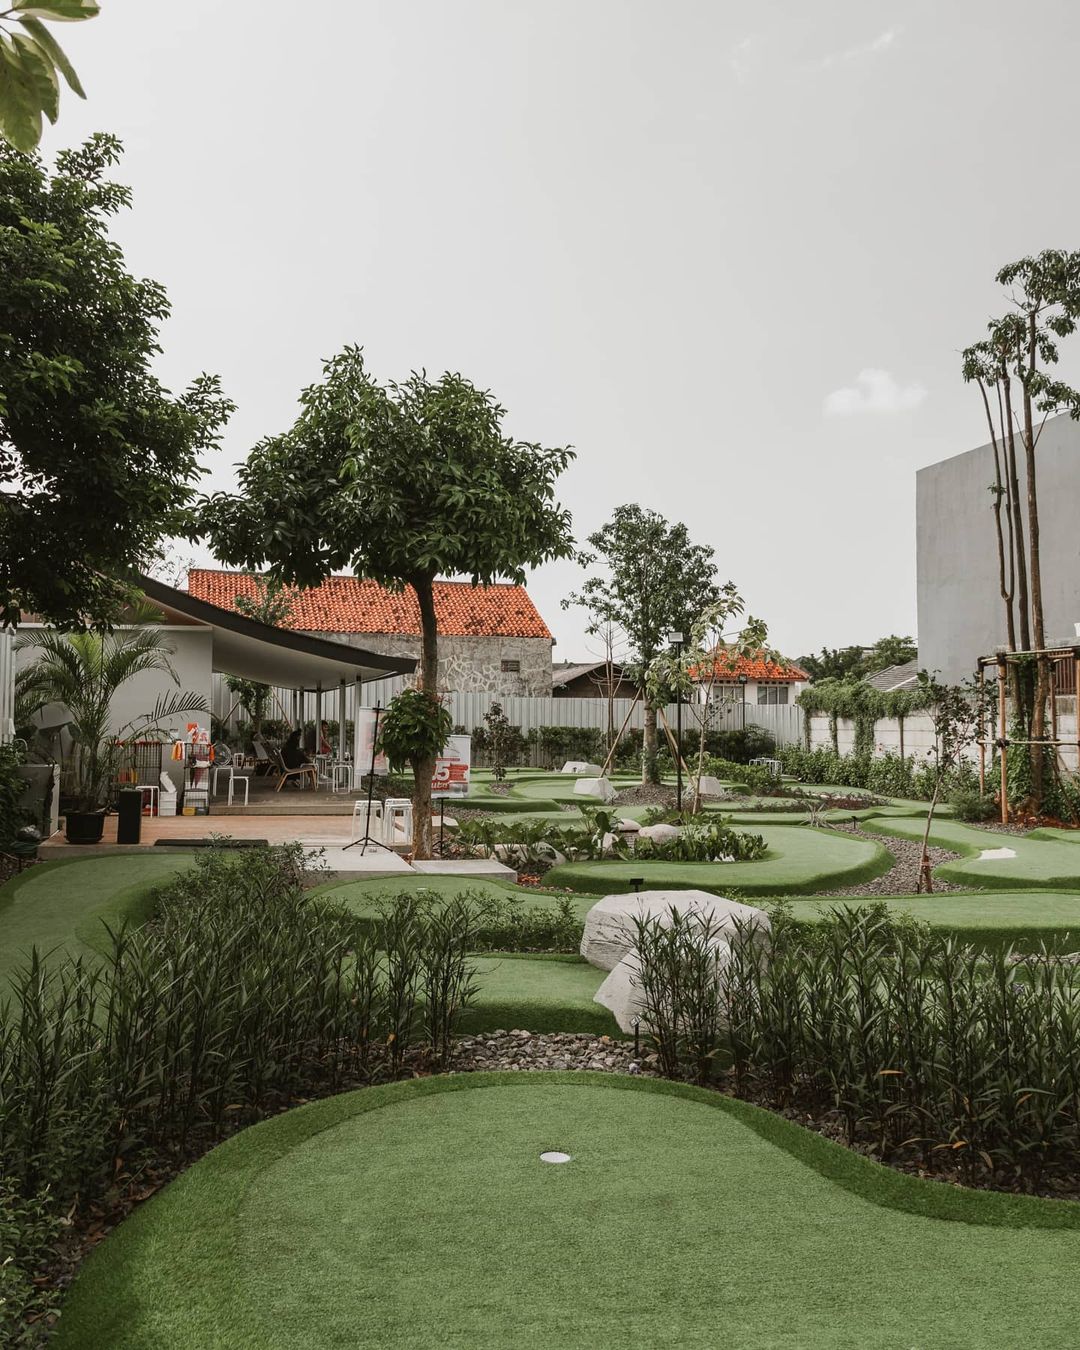 Lapangan Golf Mini Kolepa Tangerang Image From @bintaro Brews_